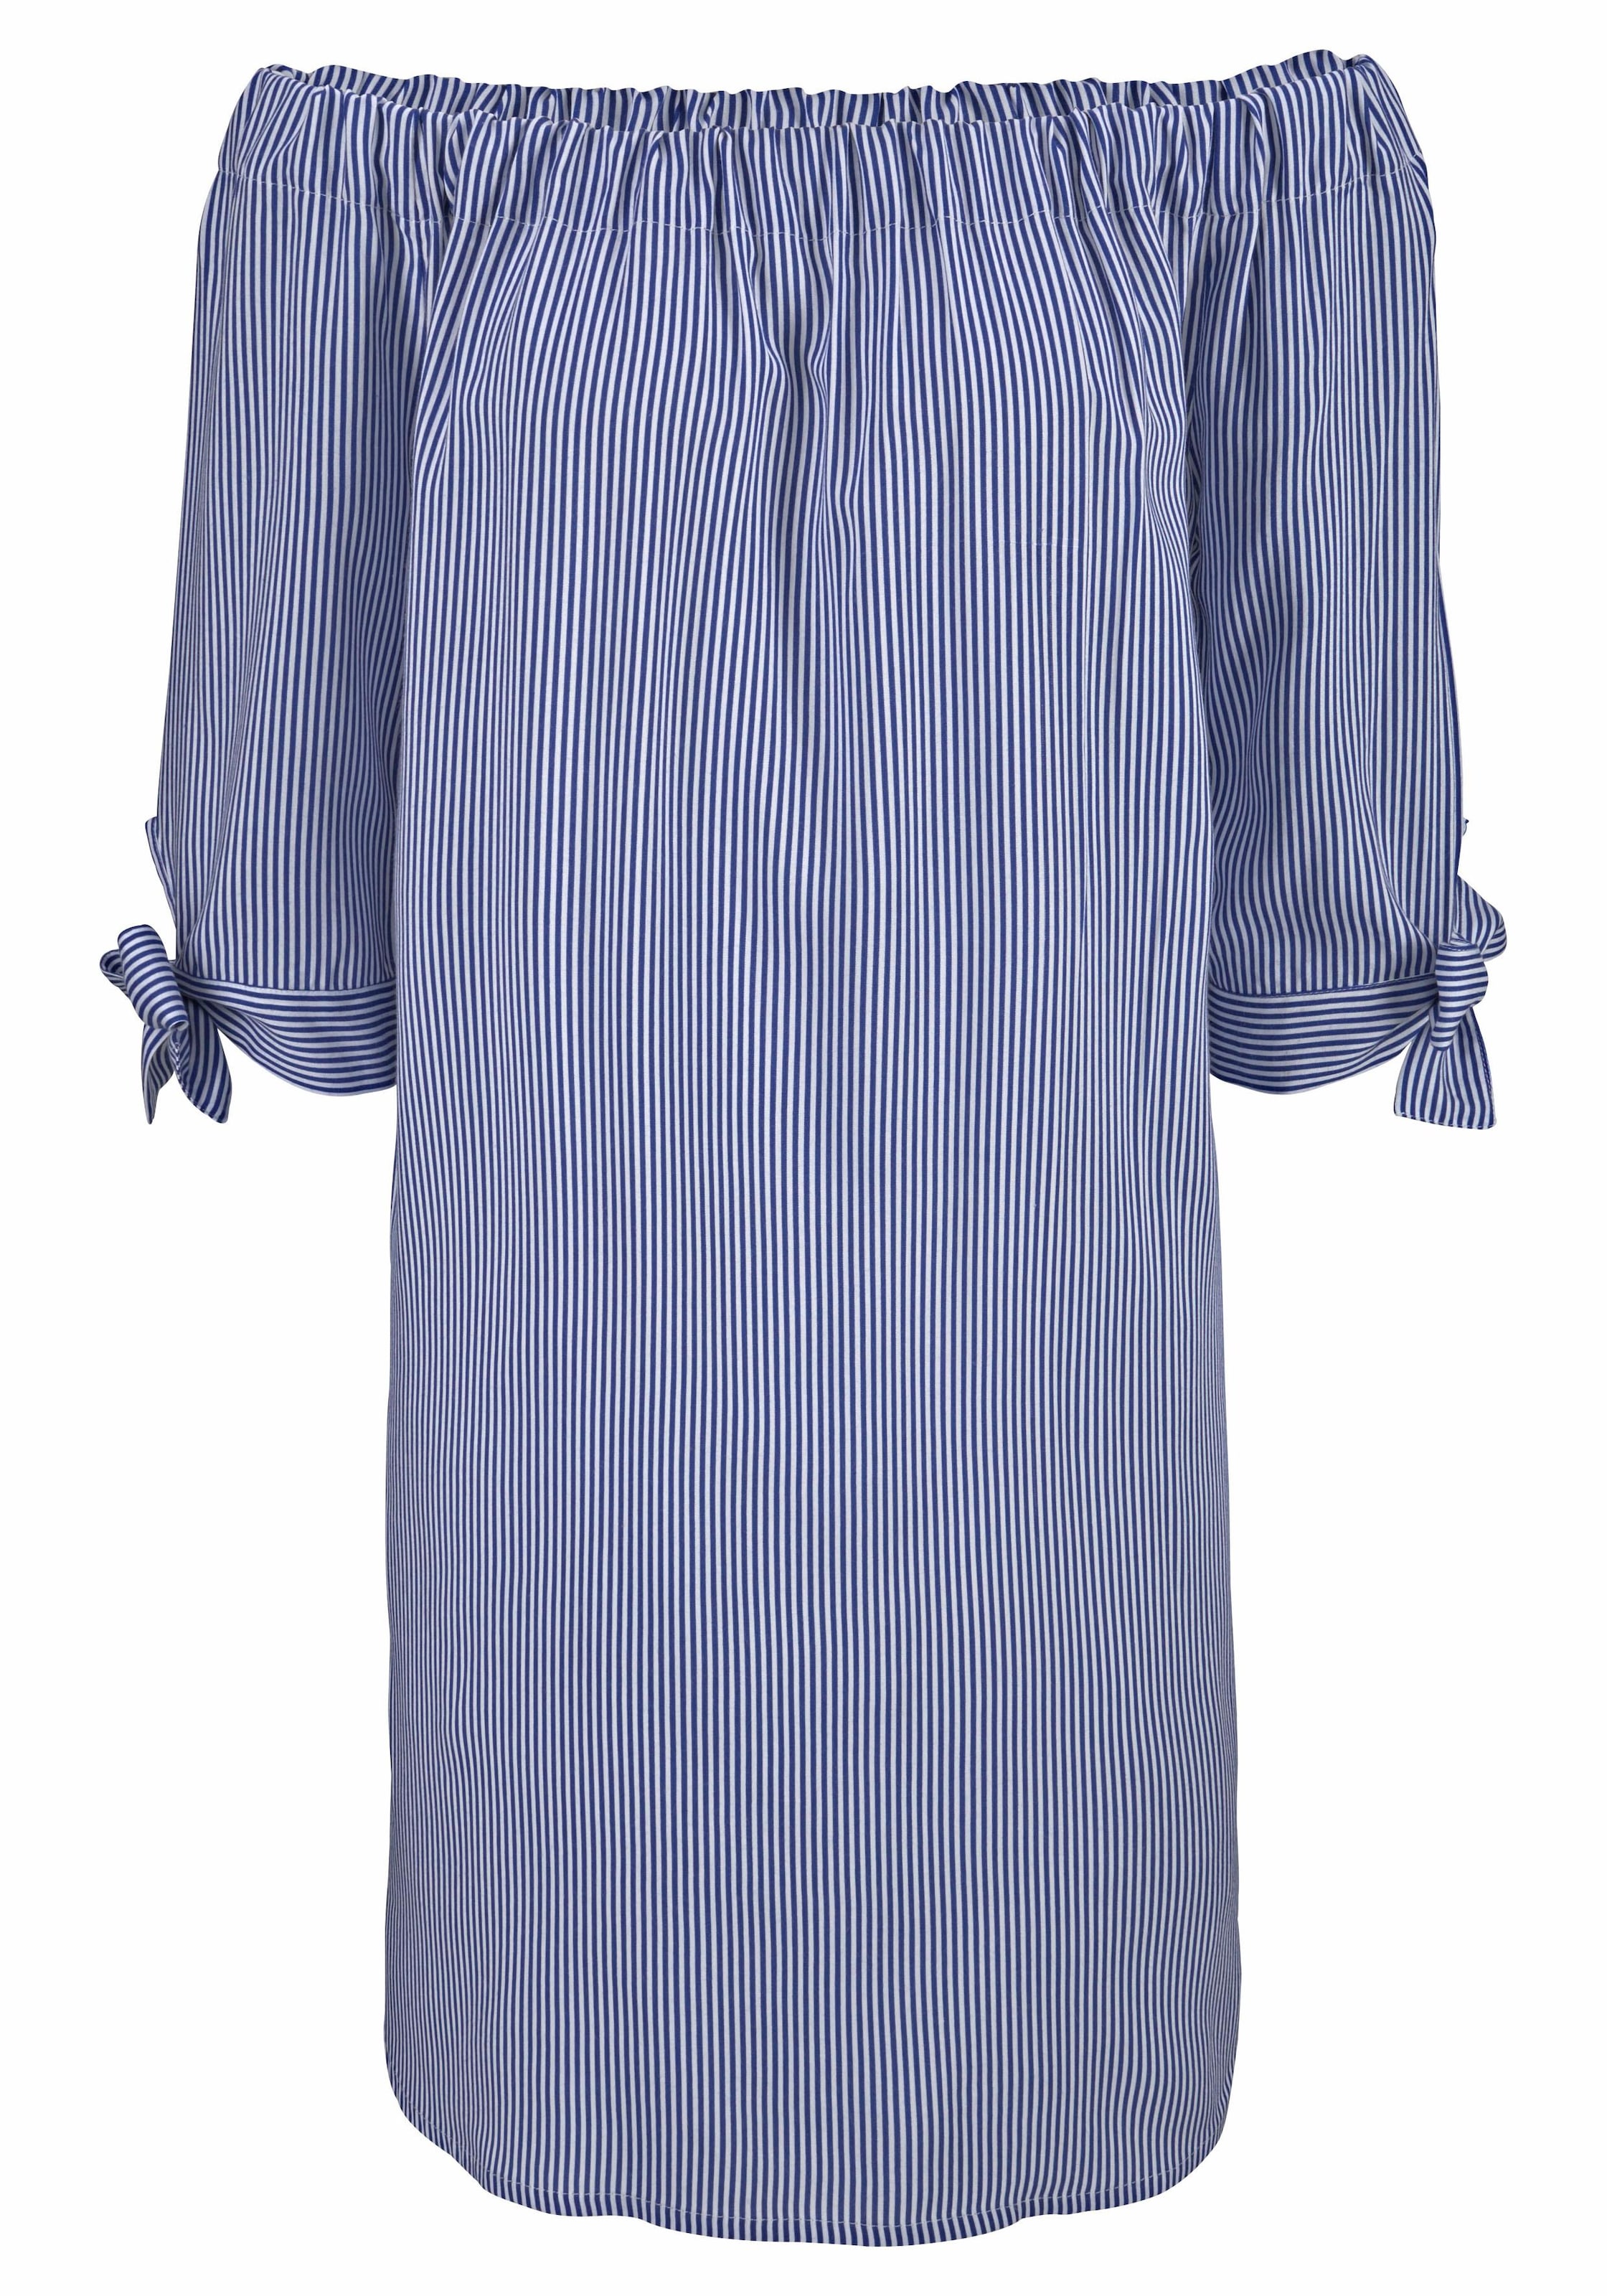 LASCANA Blusenkleid, mit | Unterwäsche Lingerie online kaufen » & Carmenausschnitt Bademode, LASCANA